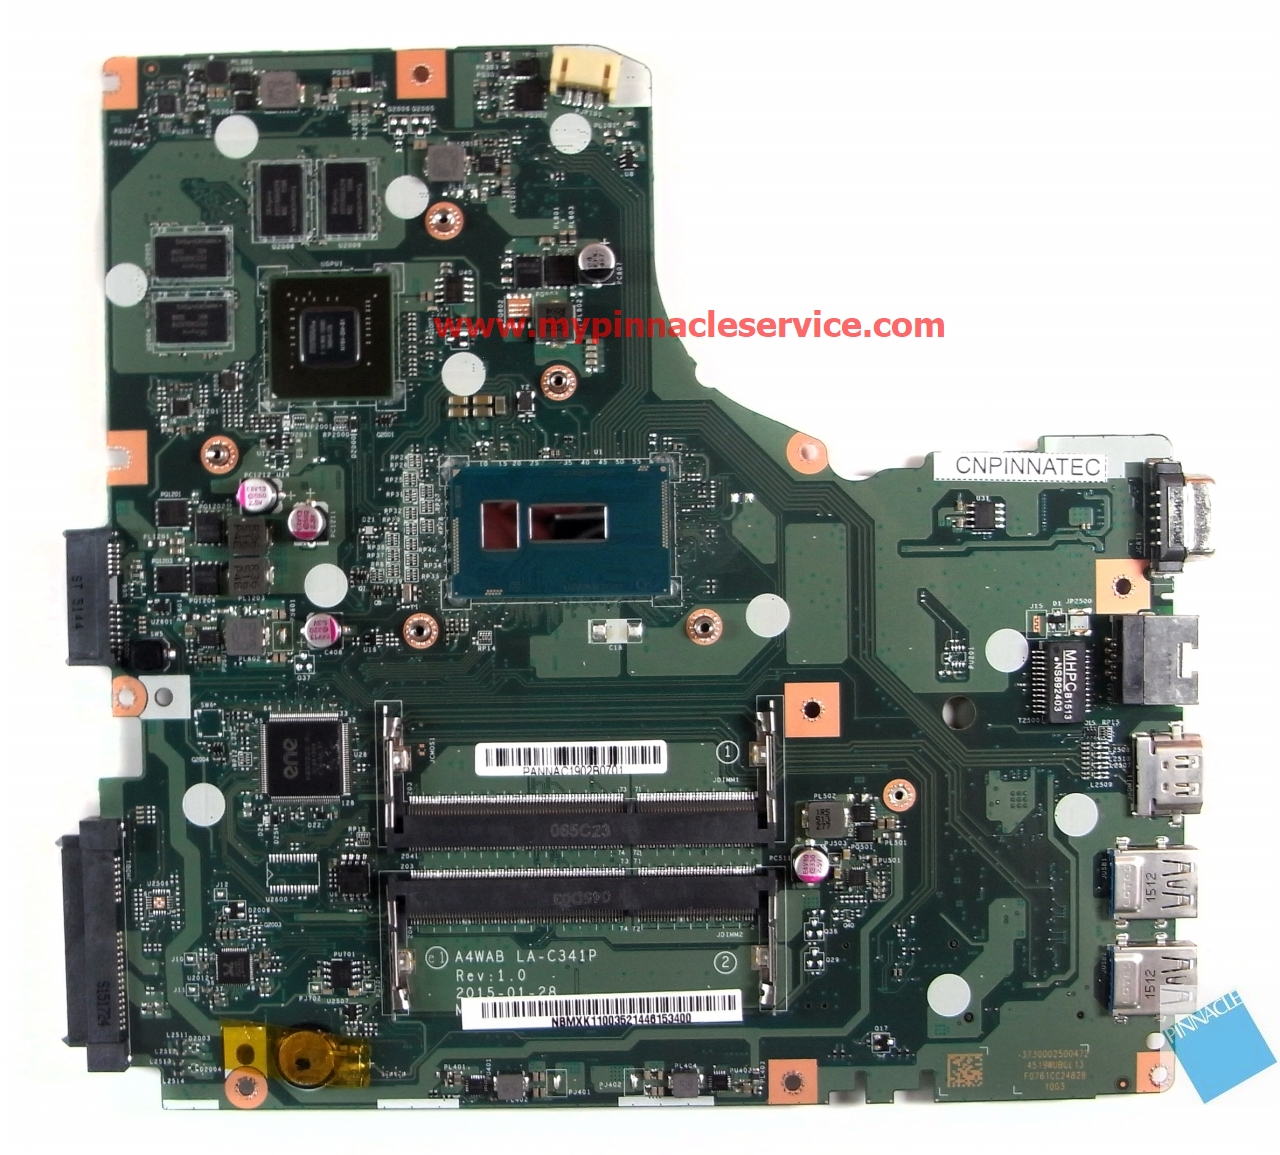 nbmxk11003-i5-5200u-gt920m-motherboard-for-acer-aspire-e5-473g-la-c341p-rimg0035.jpg